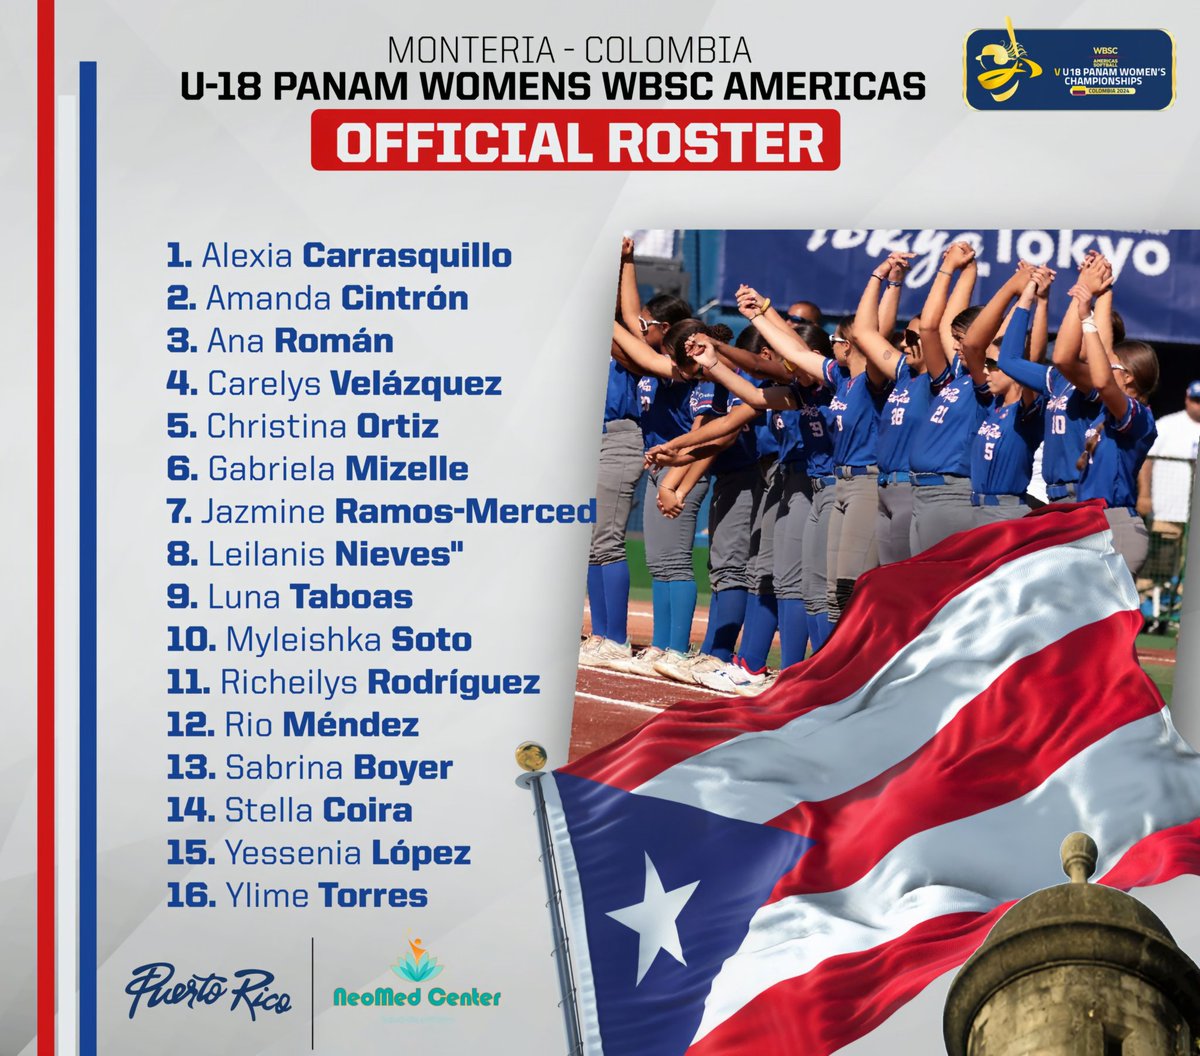 Se enorgullece de presentar las 16 atletas del Programa Nacional Femenino Sub-18 que estarán participando en el 𝐕 𝐂𝐚𝐦𝐩𝐞𝐨𝐧𝐚𝐭𝐨 𝐏𝐚𝐧𝐚𝐦𝐞𝐫𝐢𝐜𝐚𝐧𝐨 𝐅𝐞𝐦𝐞𝐧𝐢𝐧𝐨 𝐒𝐮𝐛 - 𝟏𝟖 en Montería, Córdoba - Colombia 𝟑𝟎 𝐦𝐚𝐫𝐳𝐨 - 𝟔 𝐝𝐞 𝐚𝐛𝐫𝐢𝐥, 𝟐𝟎𝟐𝟒